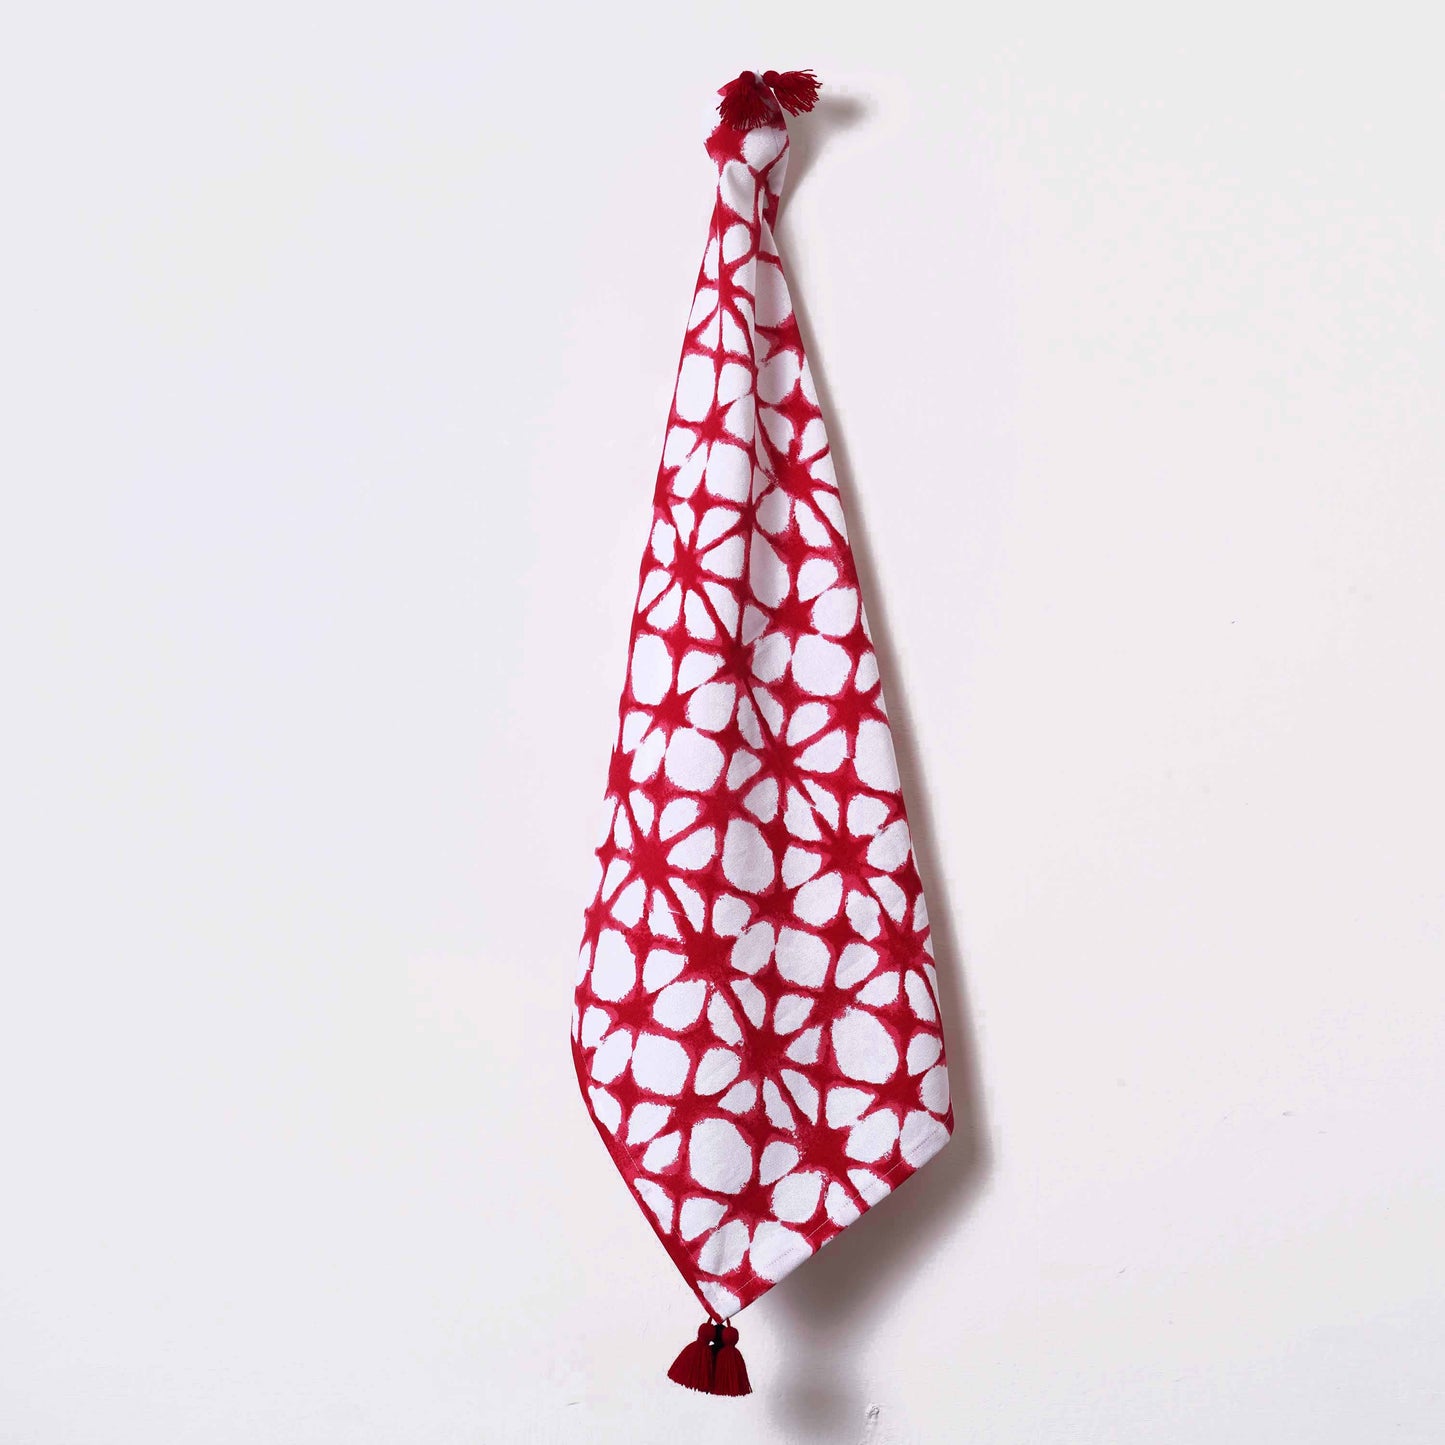 PRISM - Red Tie Dye Prism Pattern Kitchen Towel, geometrical pattern, 100% cotton, size 20"X28"